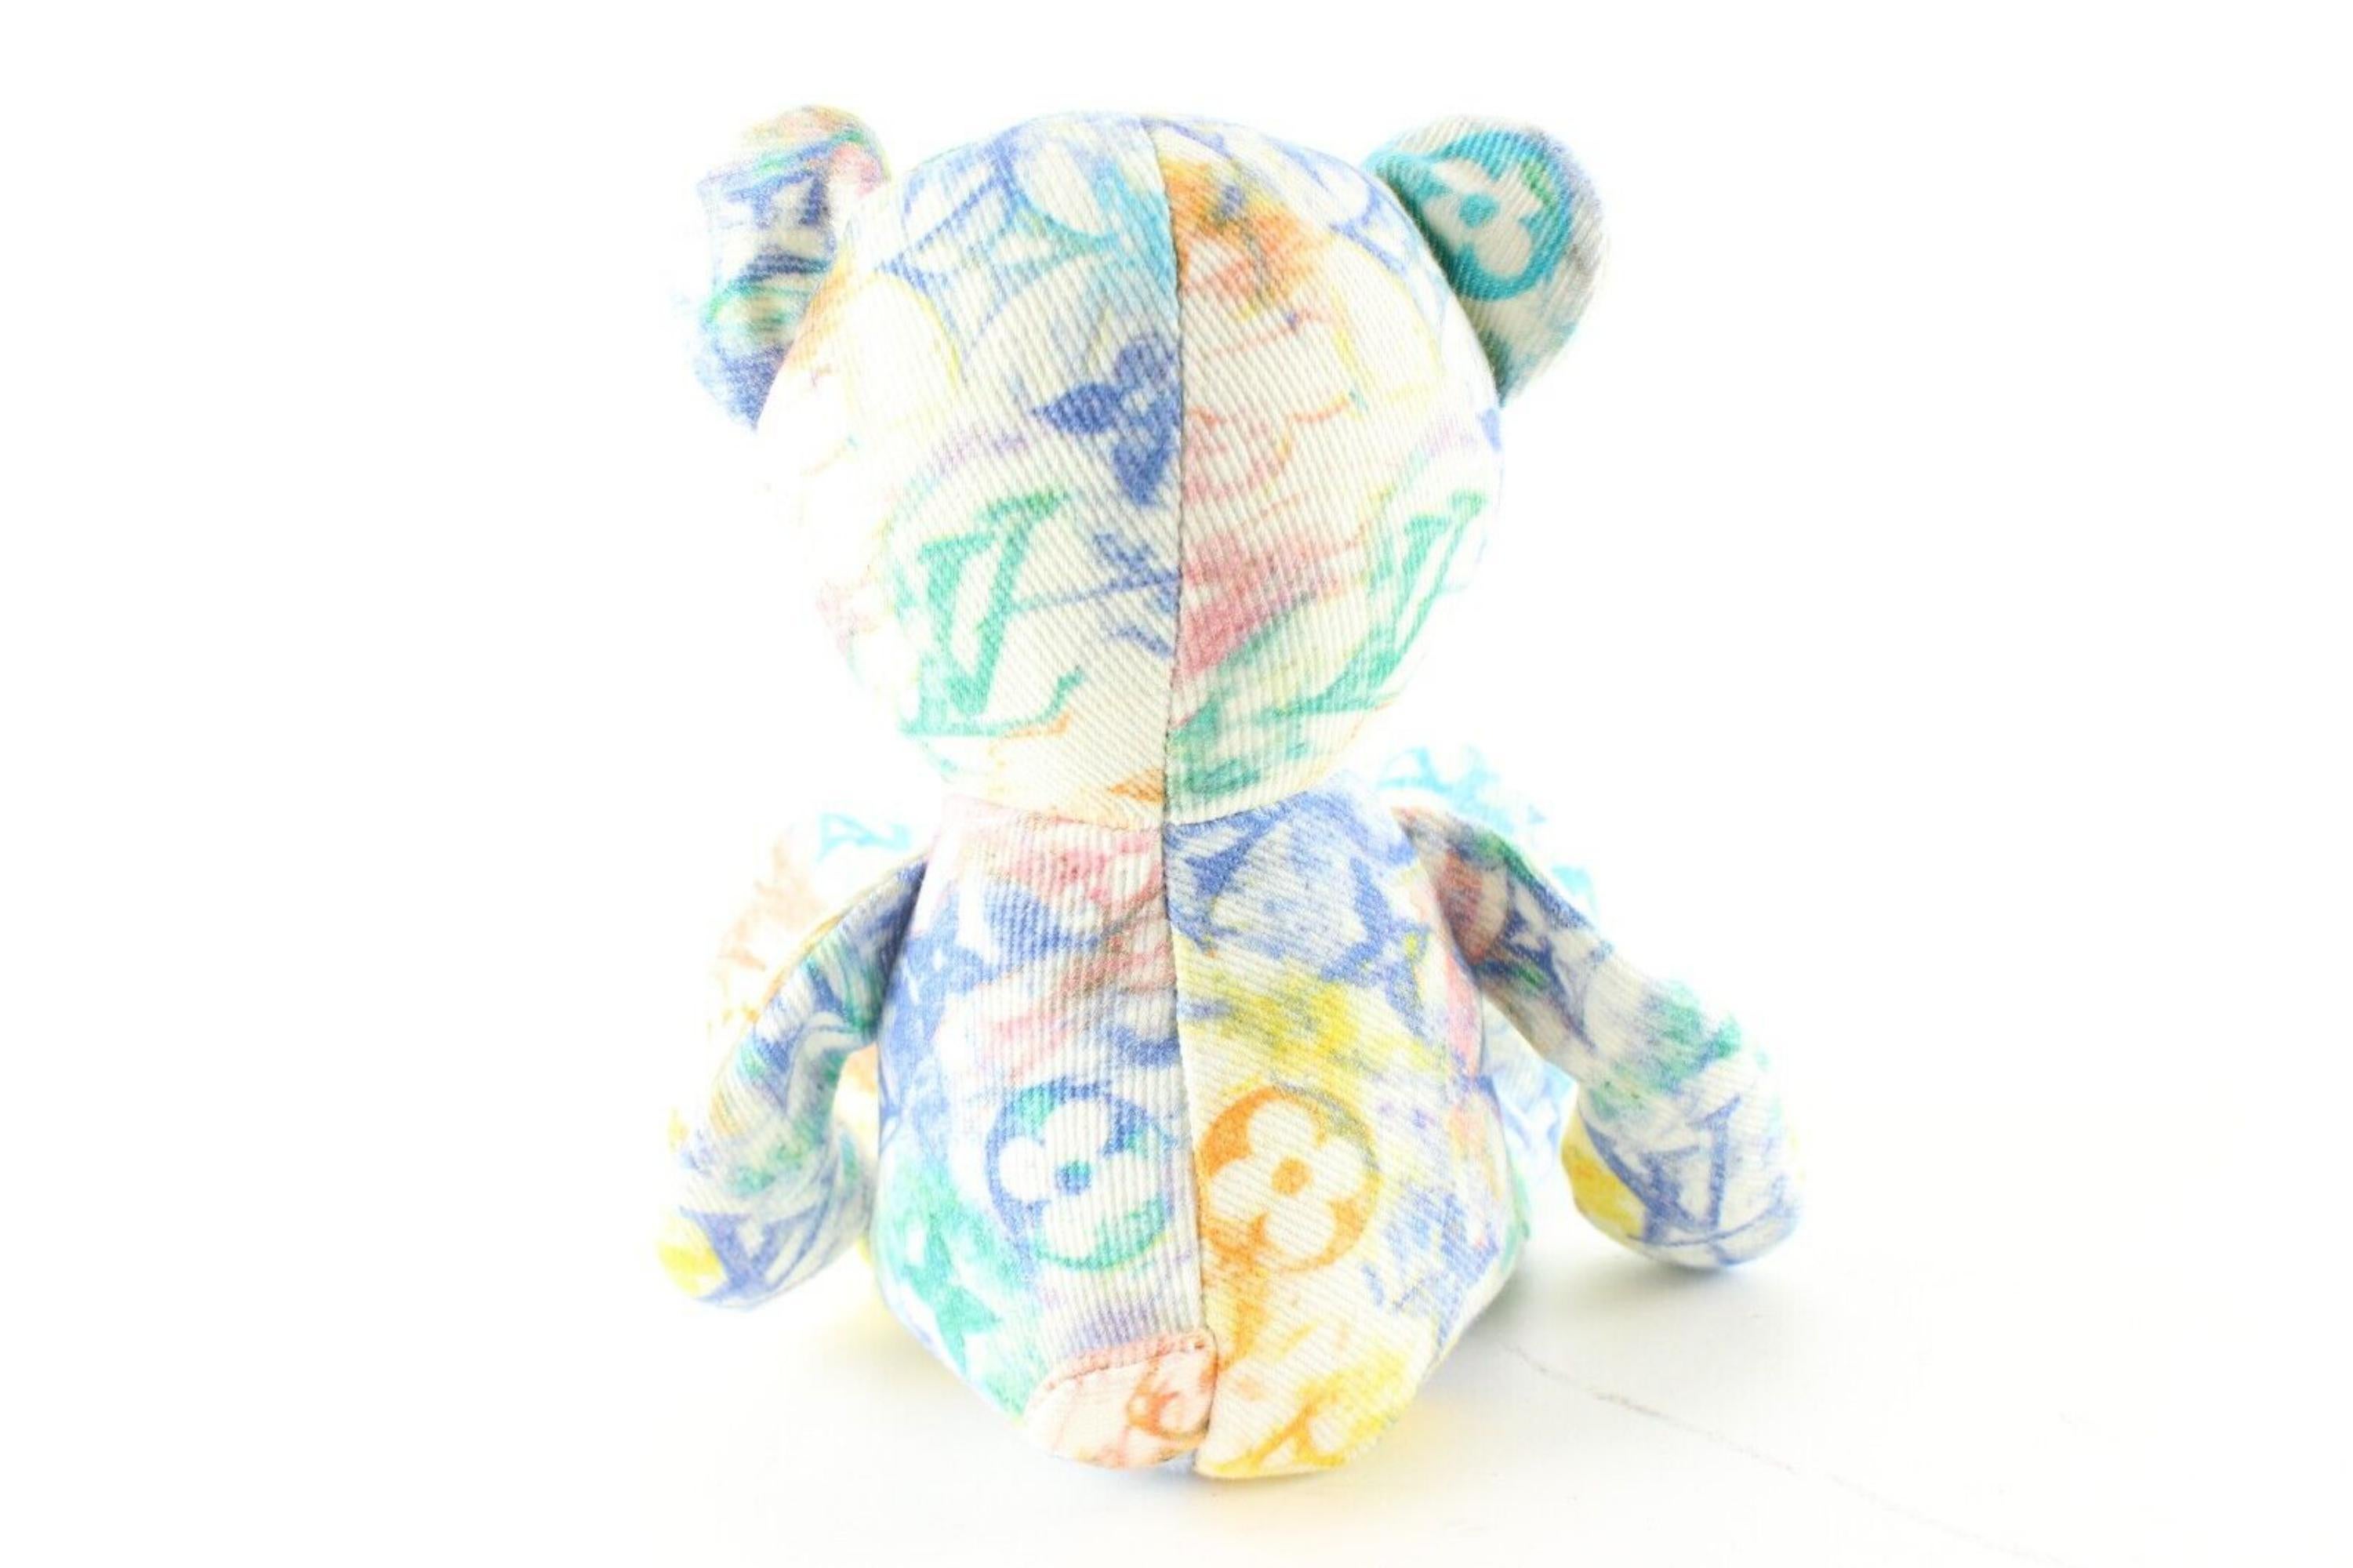 Louis Vuitton Virgil Abloh Unicef Pastels Watercolor Doudou Teddy Bear 7LV0123 4